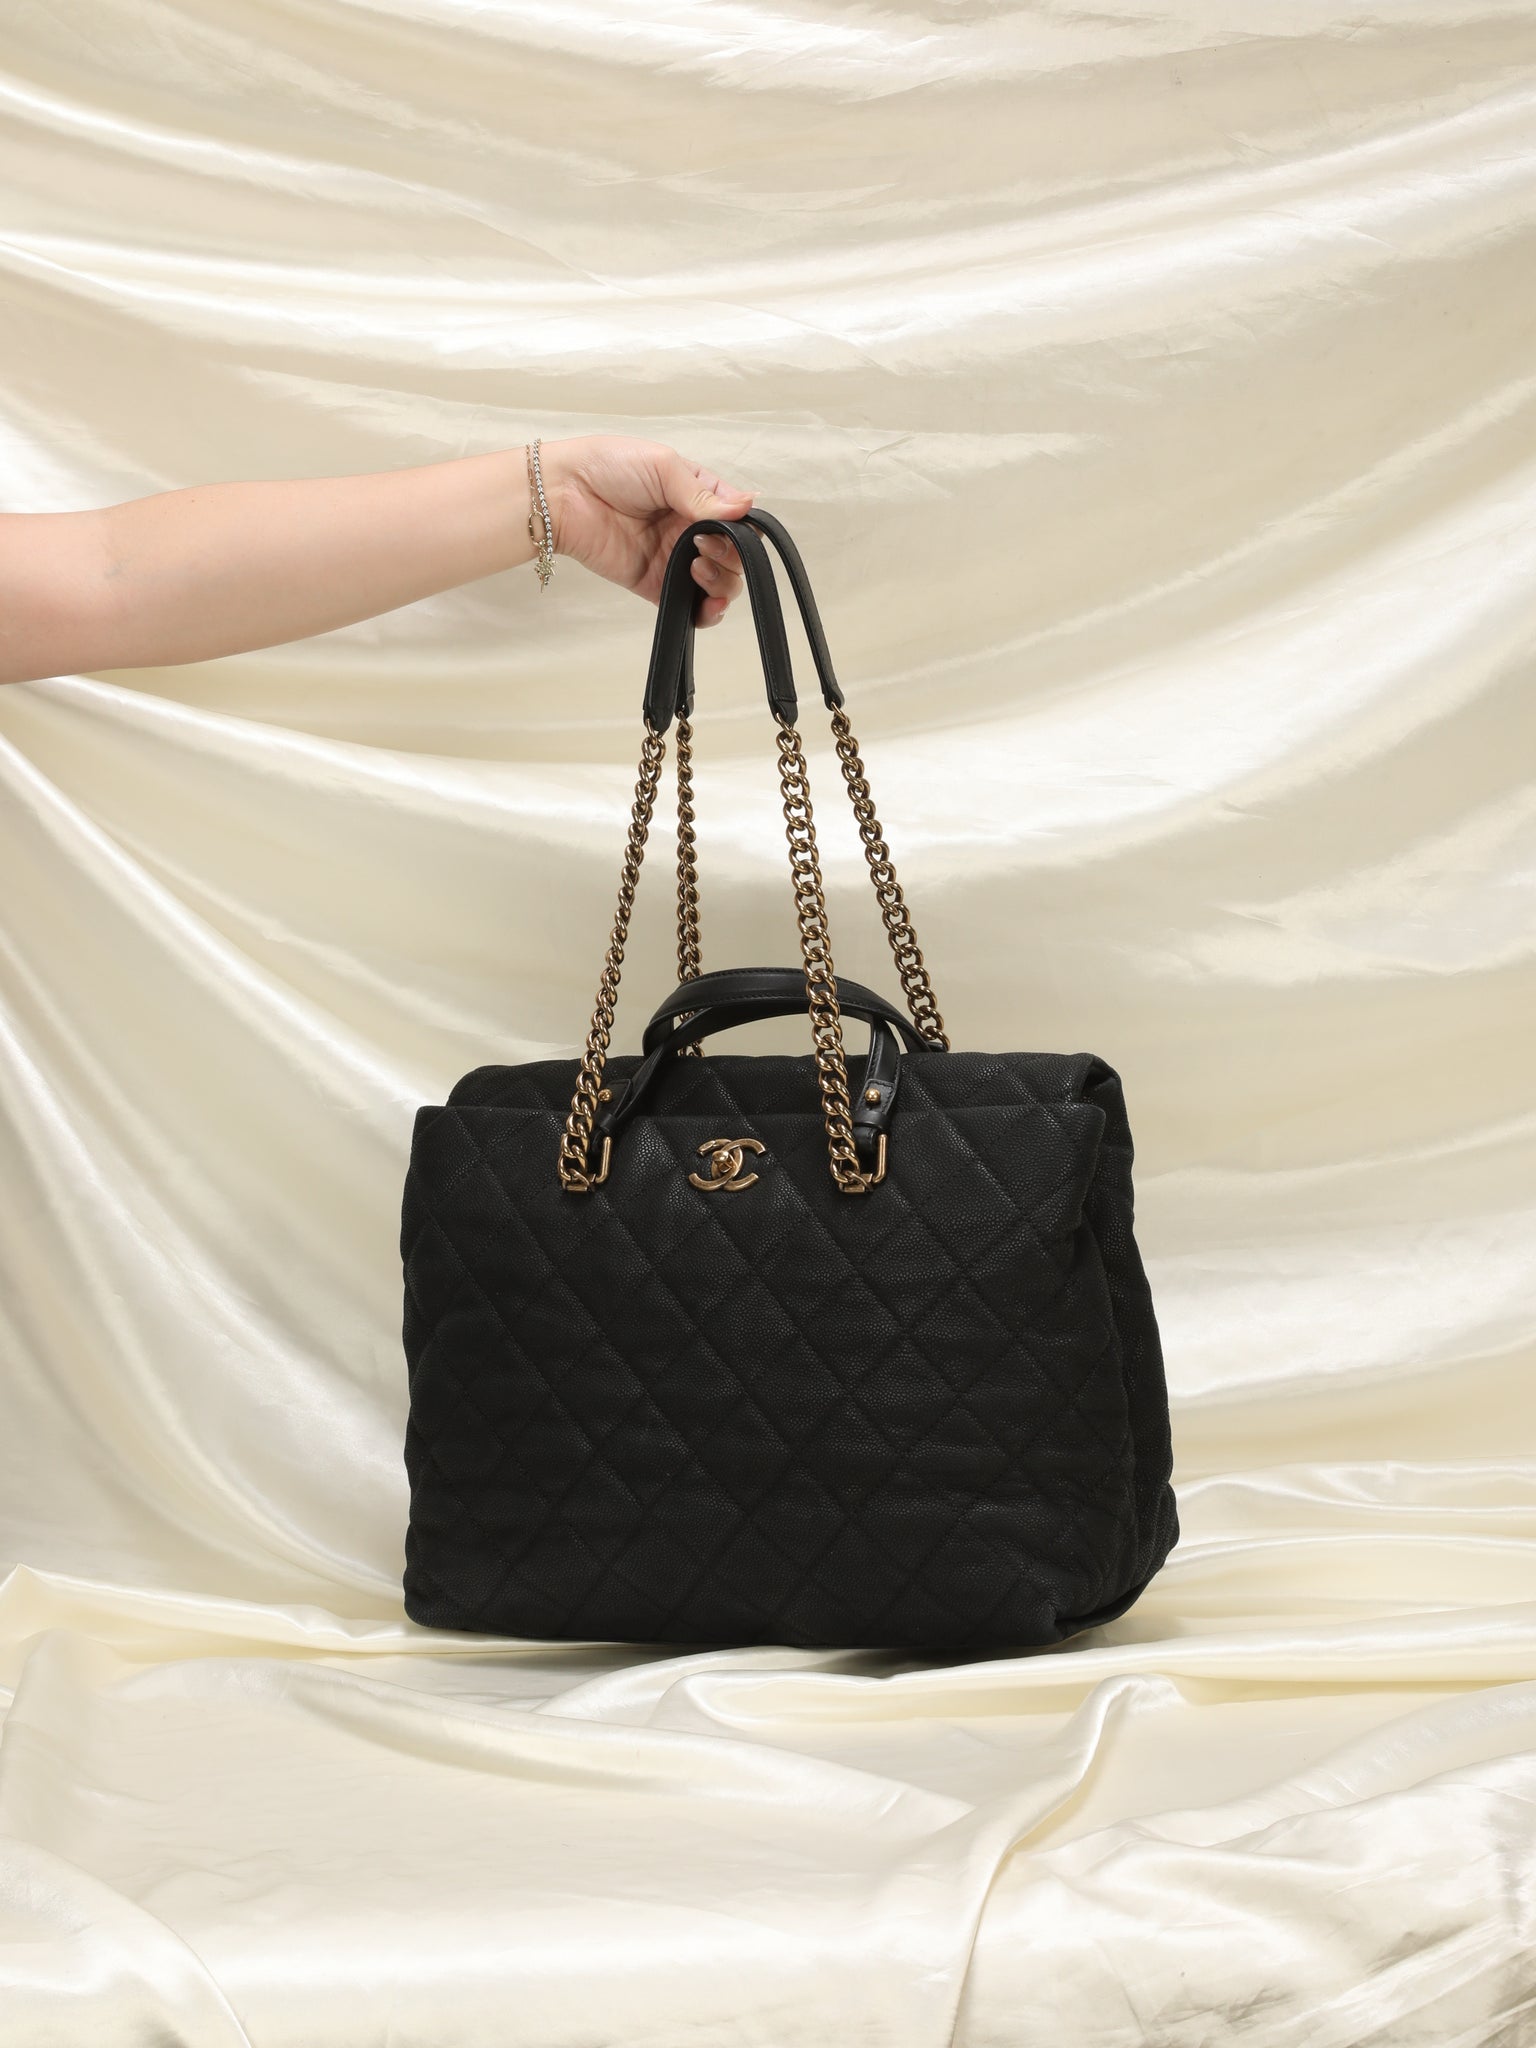 chanel bag with chain handle handbag